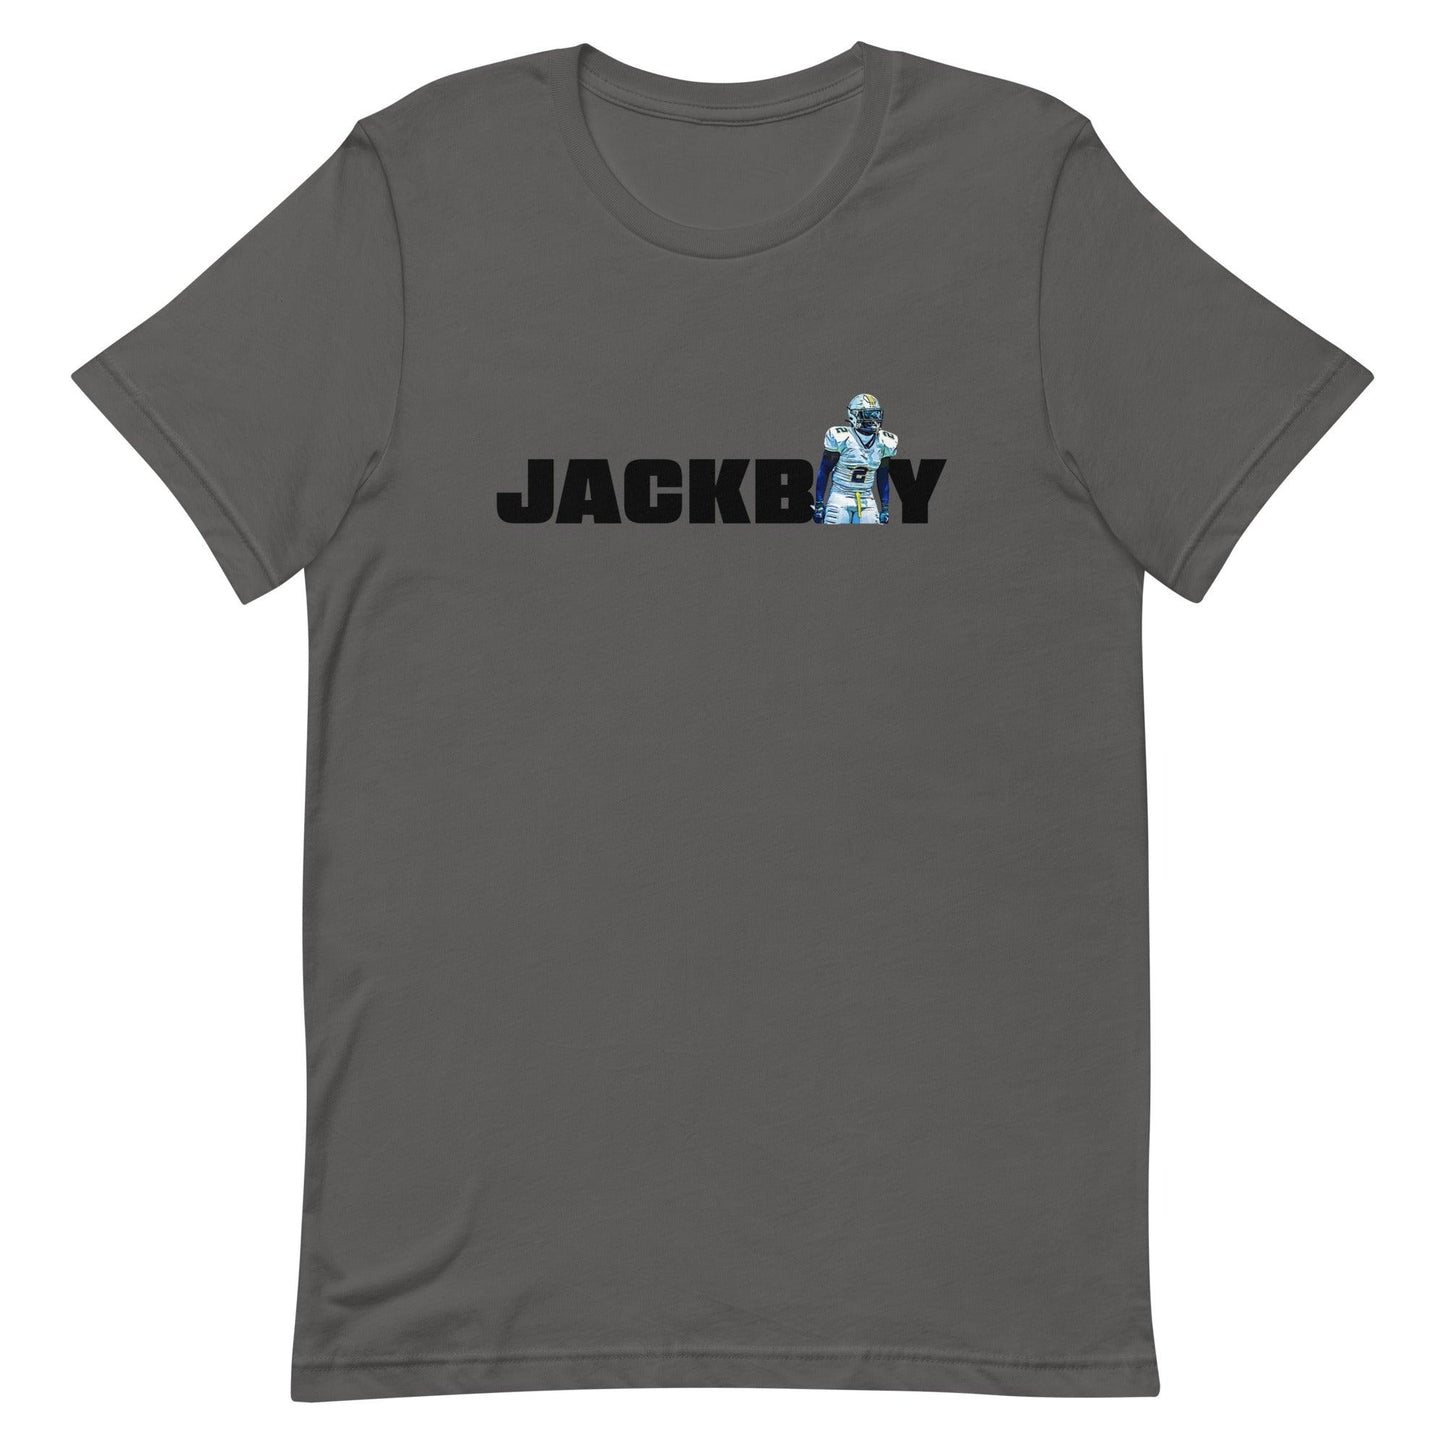 Jalen Mitchell "Jersey" t-shirt - Fan Arch